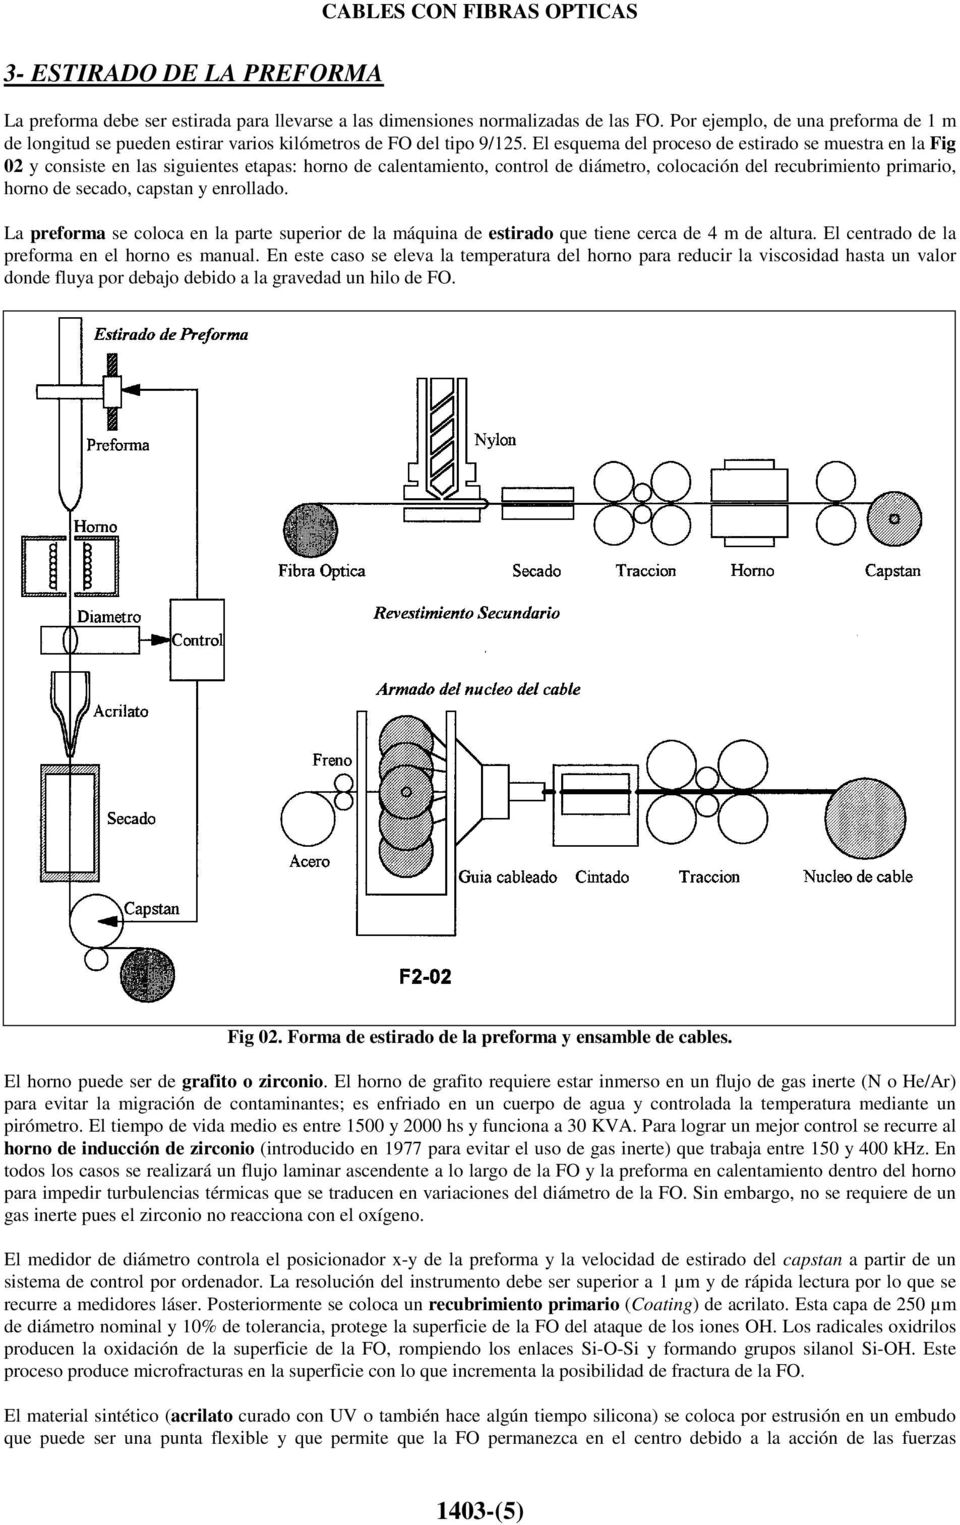 El esquema del proceso de estirado se muestra en la Fig 02 y consiste en las siguientes etapas: horno de calentamiento, control de diámetro, colocación del recubrimiento primario, horno de secado,